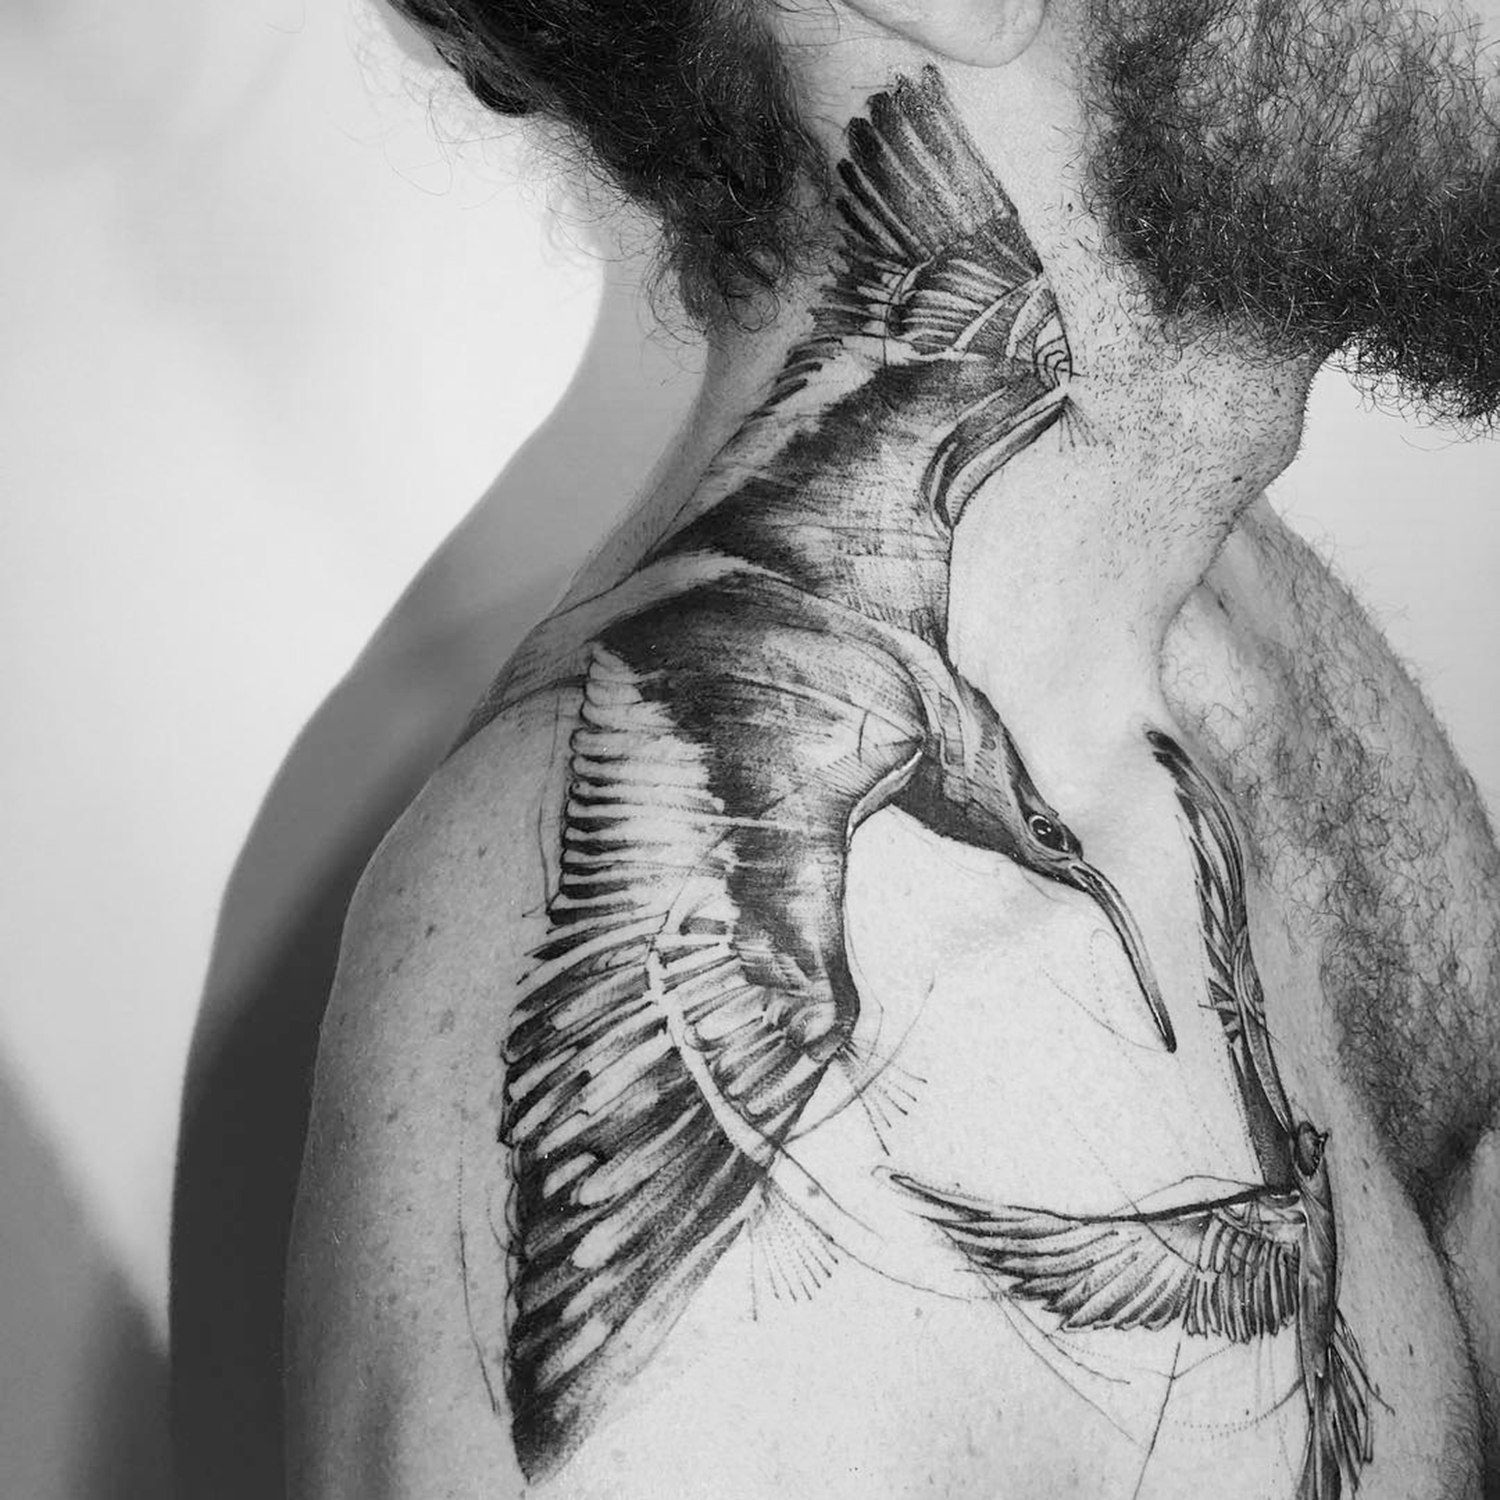 bird sketch style tattoo on shoulder by bktattooer